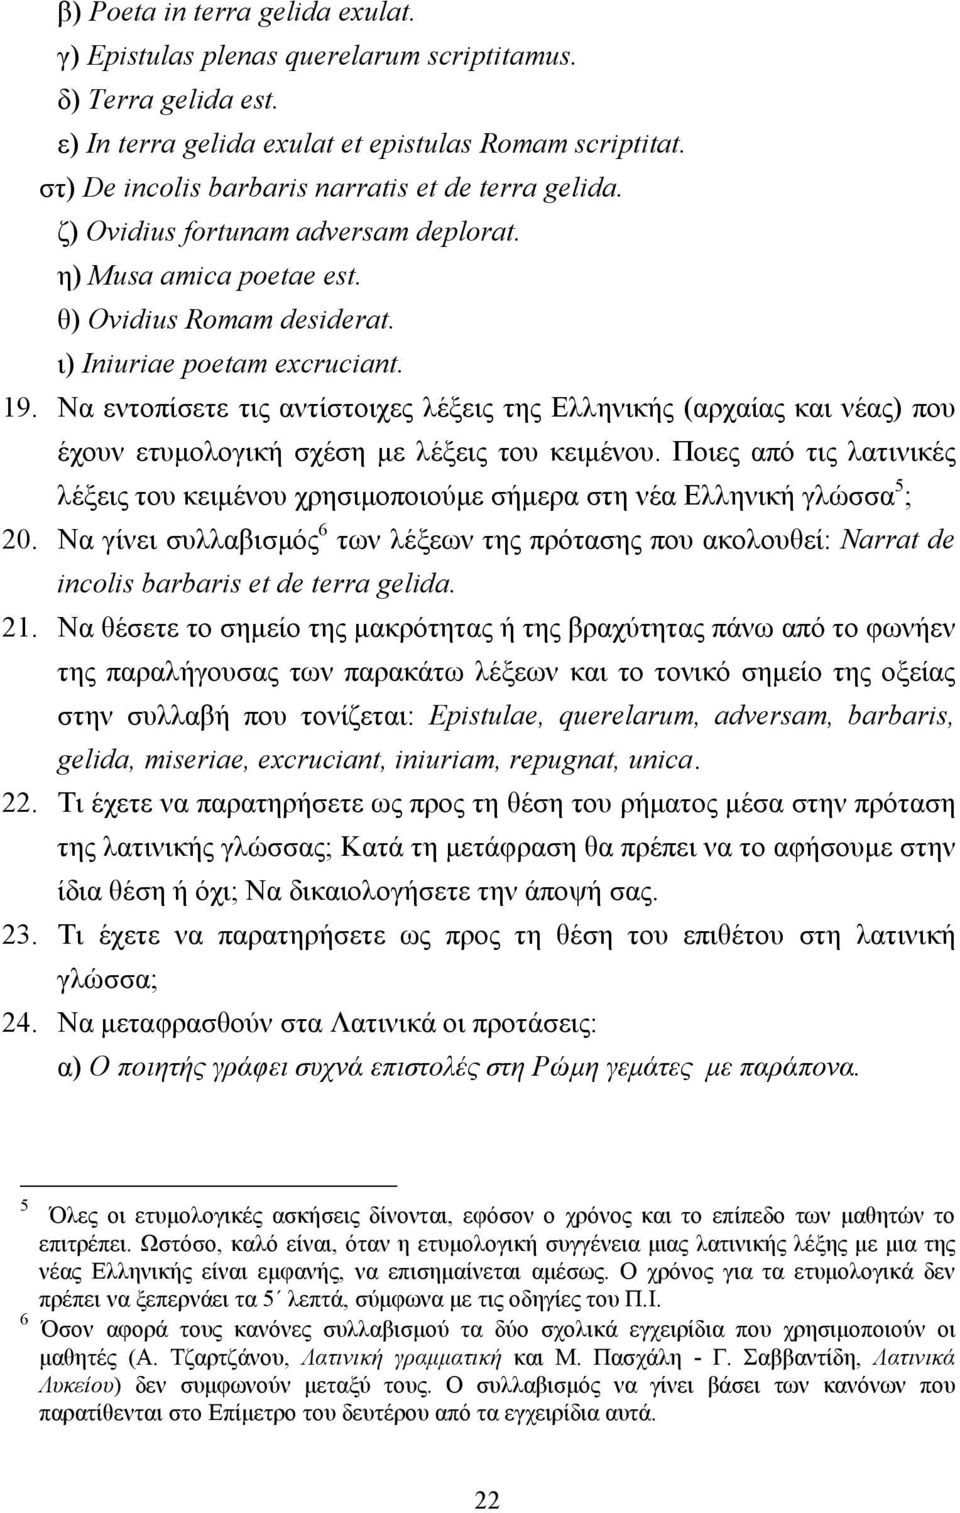 Να εντοπίσετε τις αντίστοιχες λέξεις της Ελληνικής (αρχαίας και νέας) που έχουν ετυµολογική σχέση µε λέξεις του κειµένου.